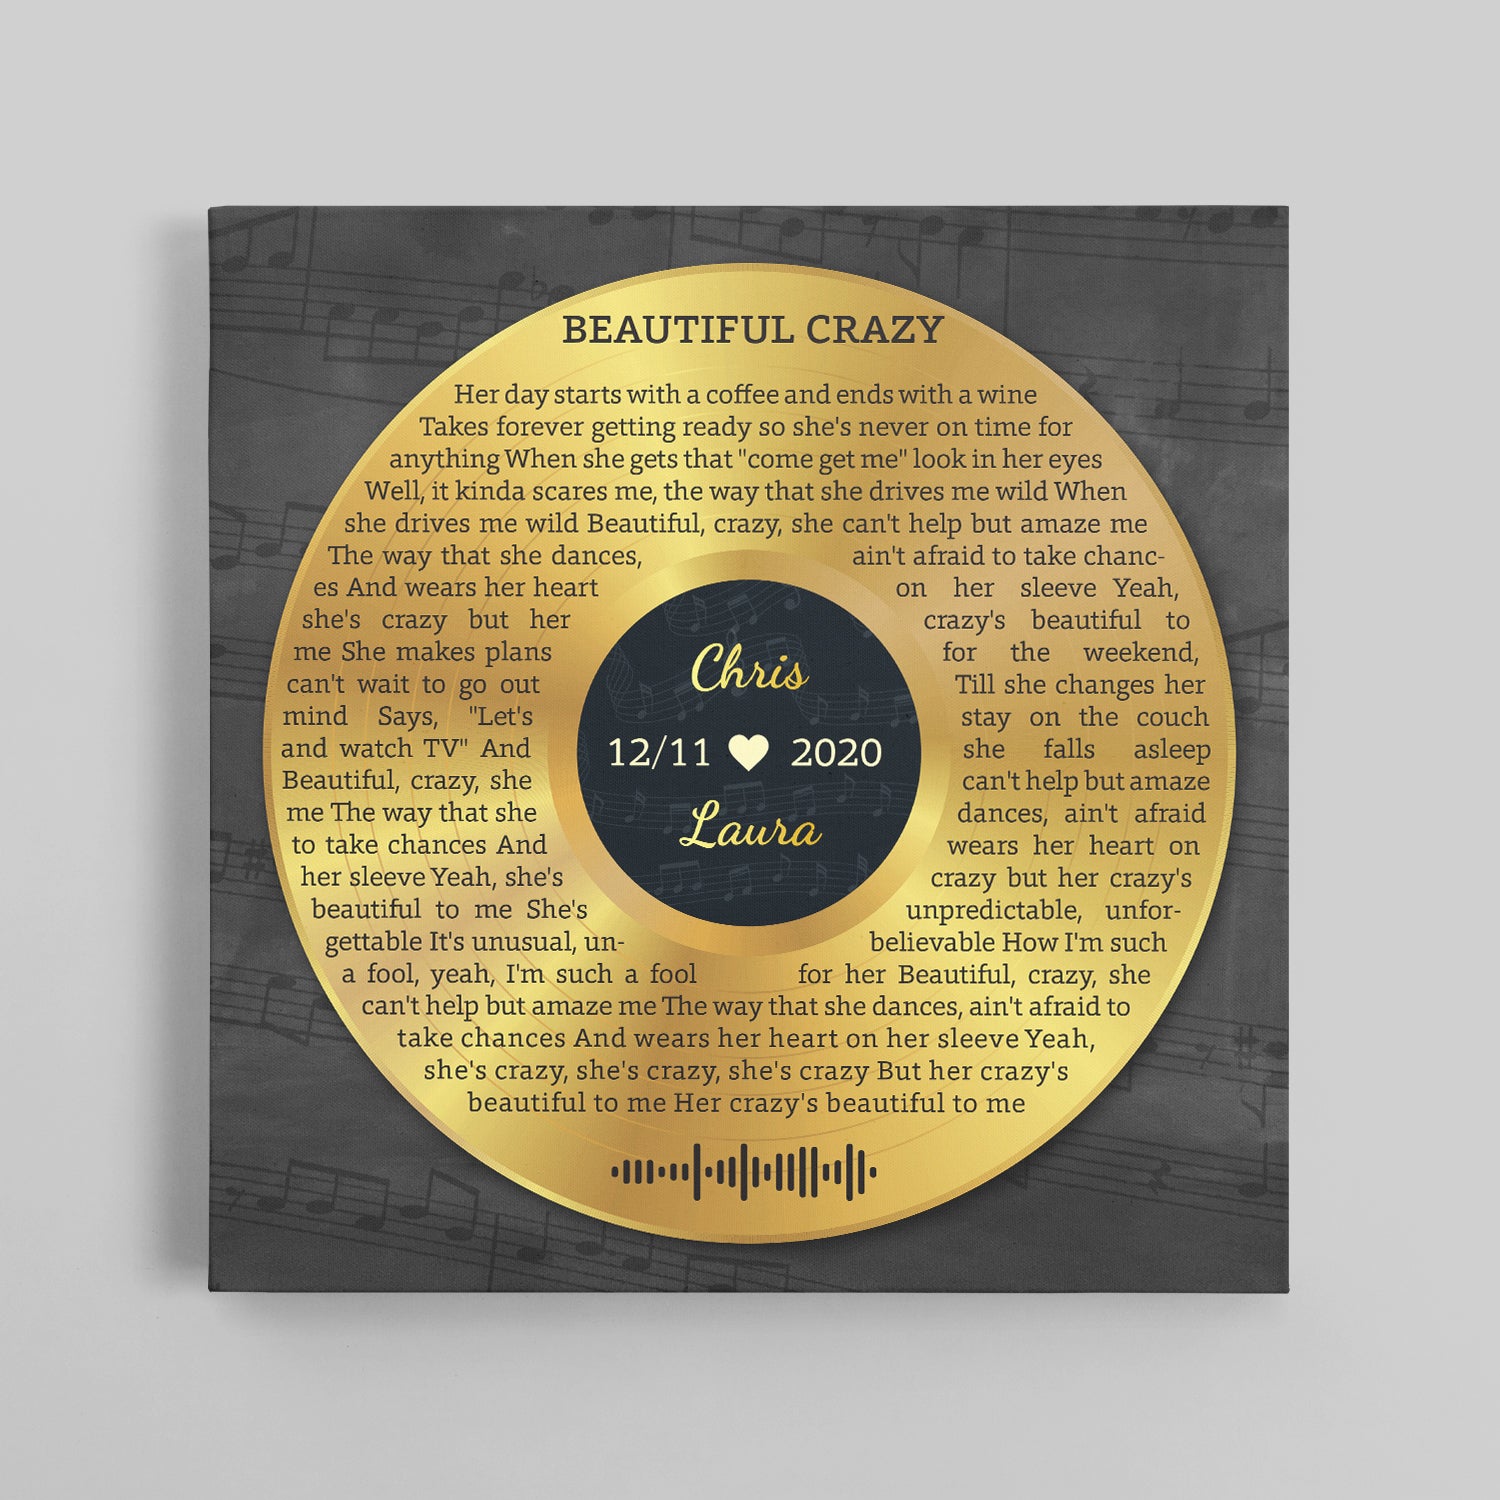 Custom Song Lyrics And Text, Vinyl Record Art, Gold Style, Canvas Wall Art